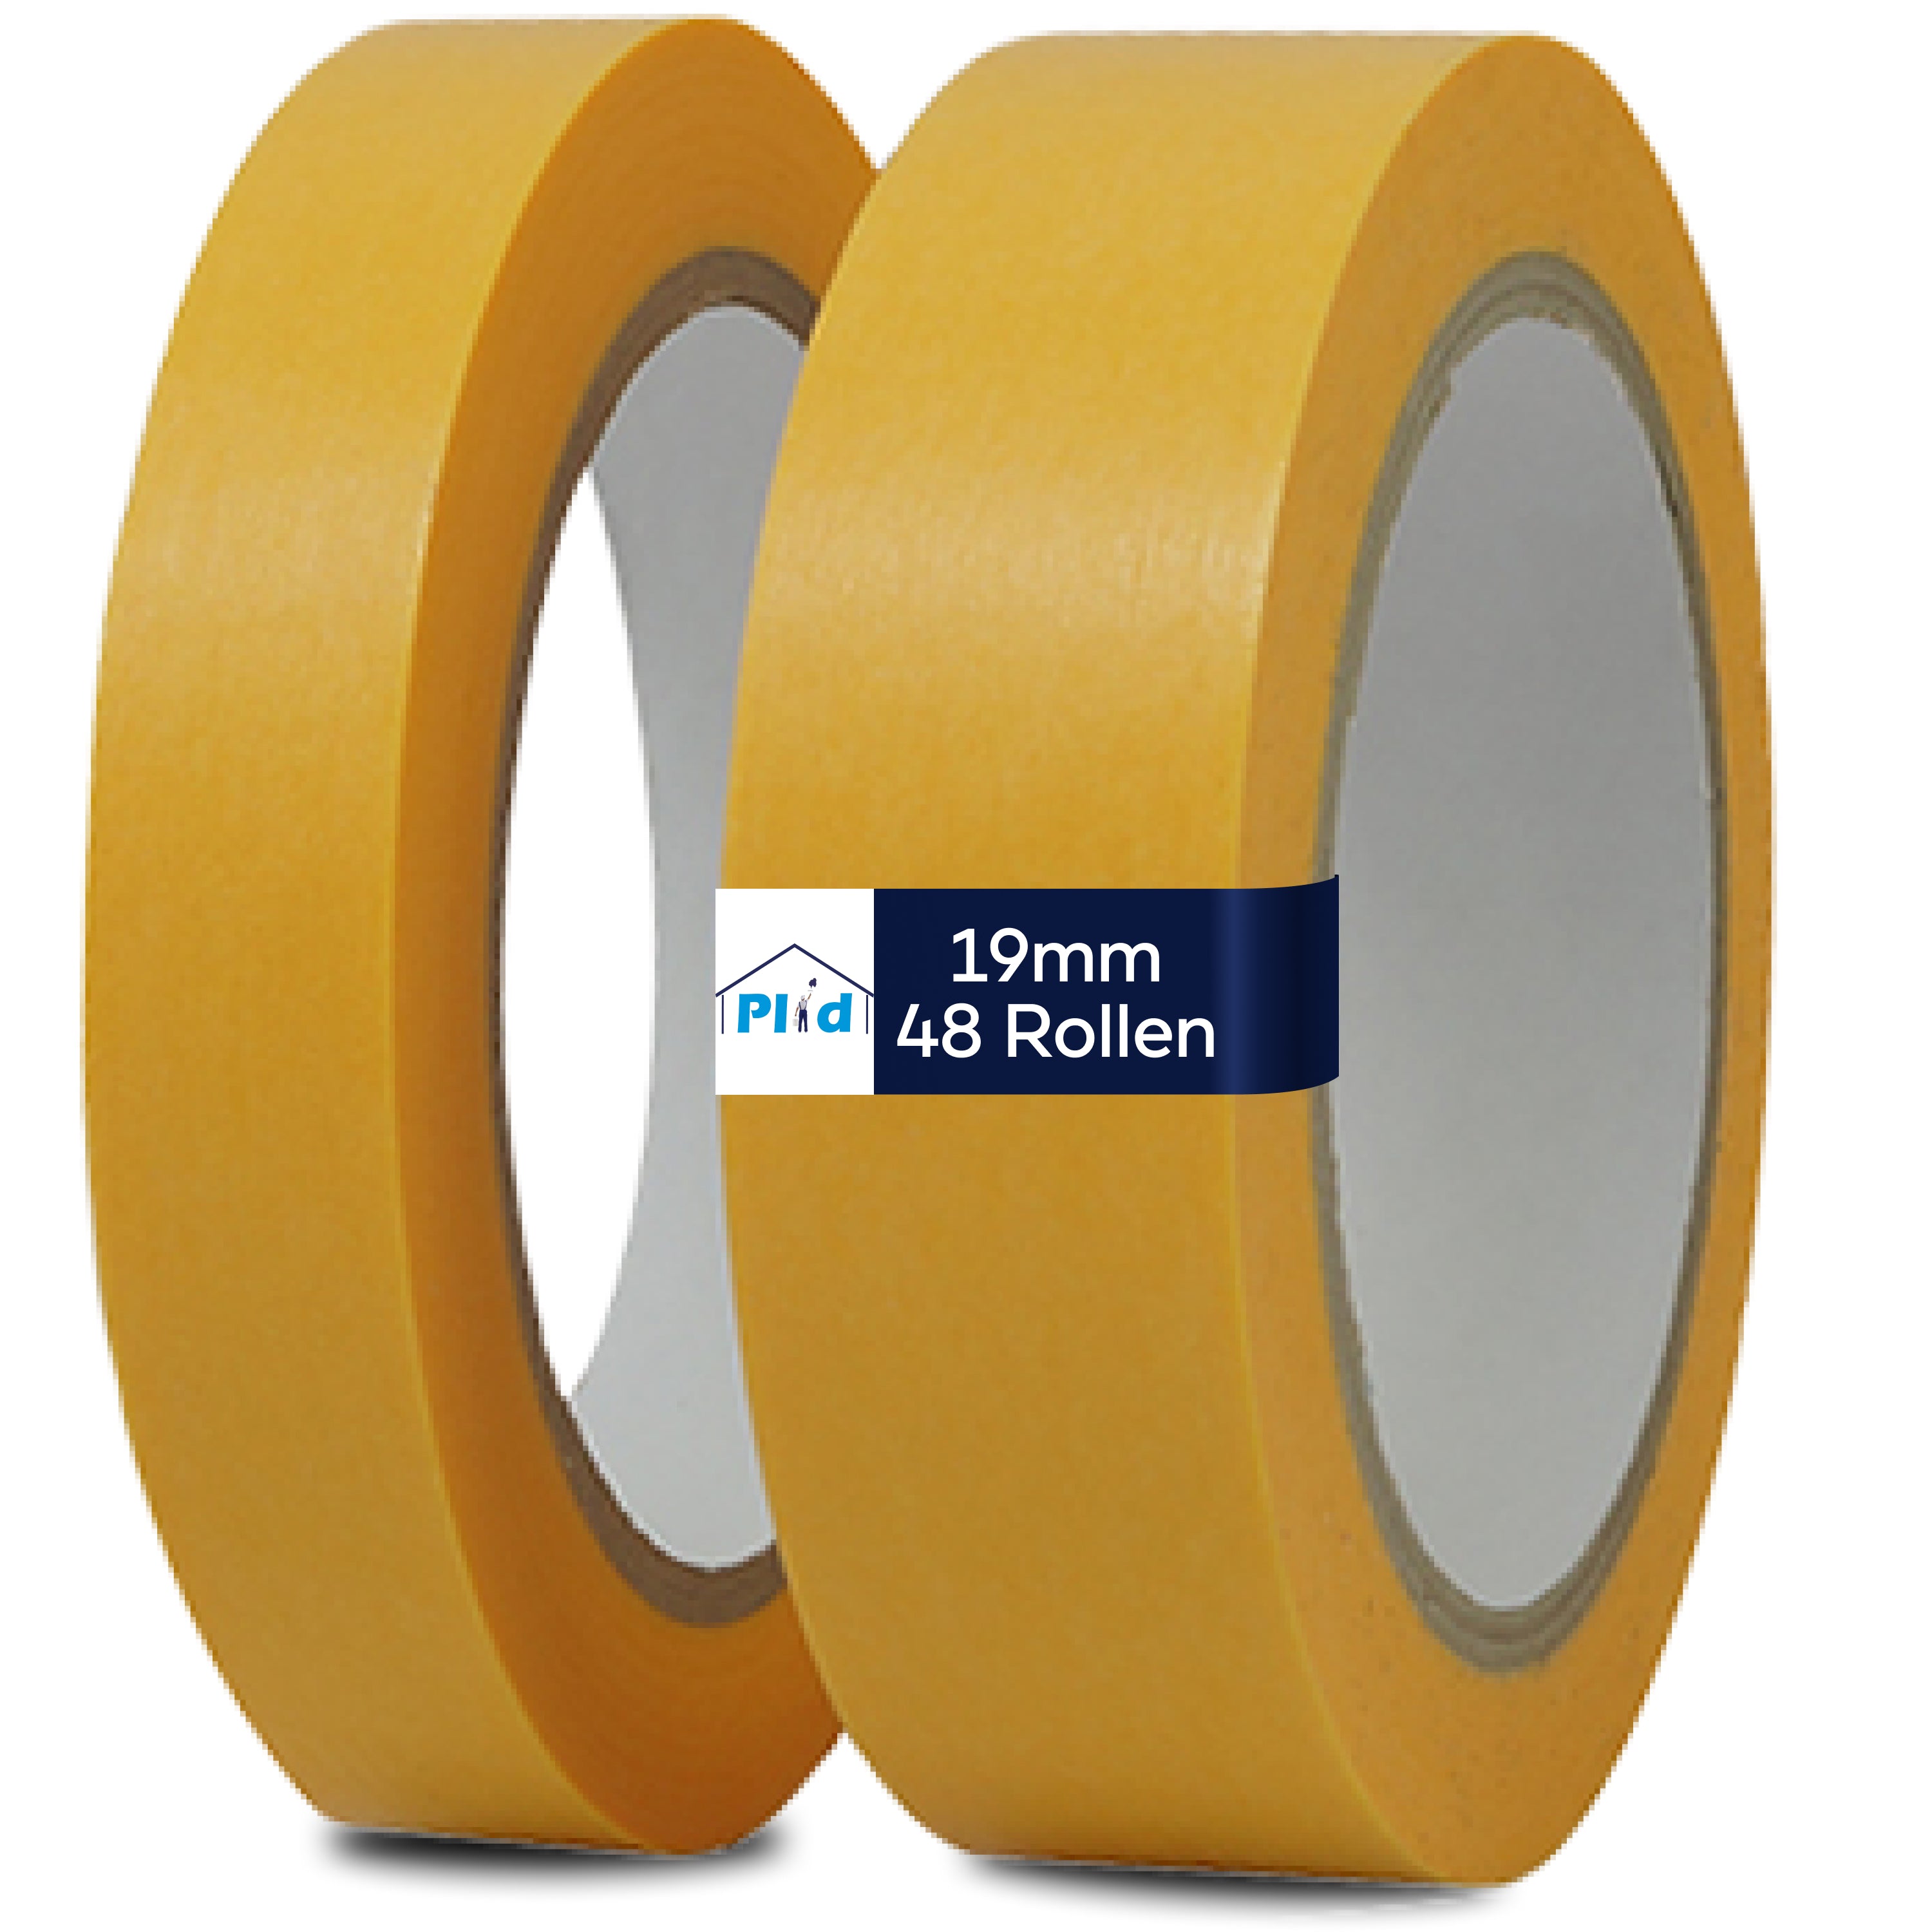 PLID Goldband 100° UV30 50m – PLID Shop